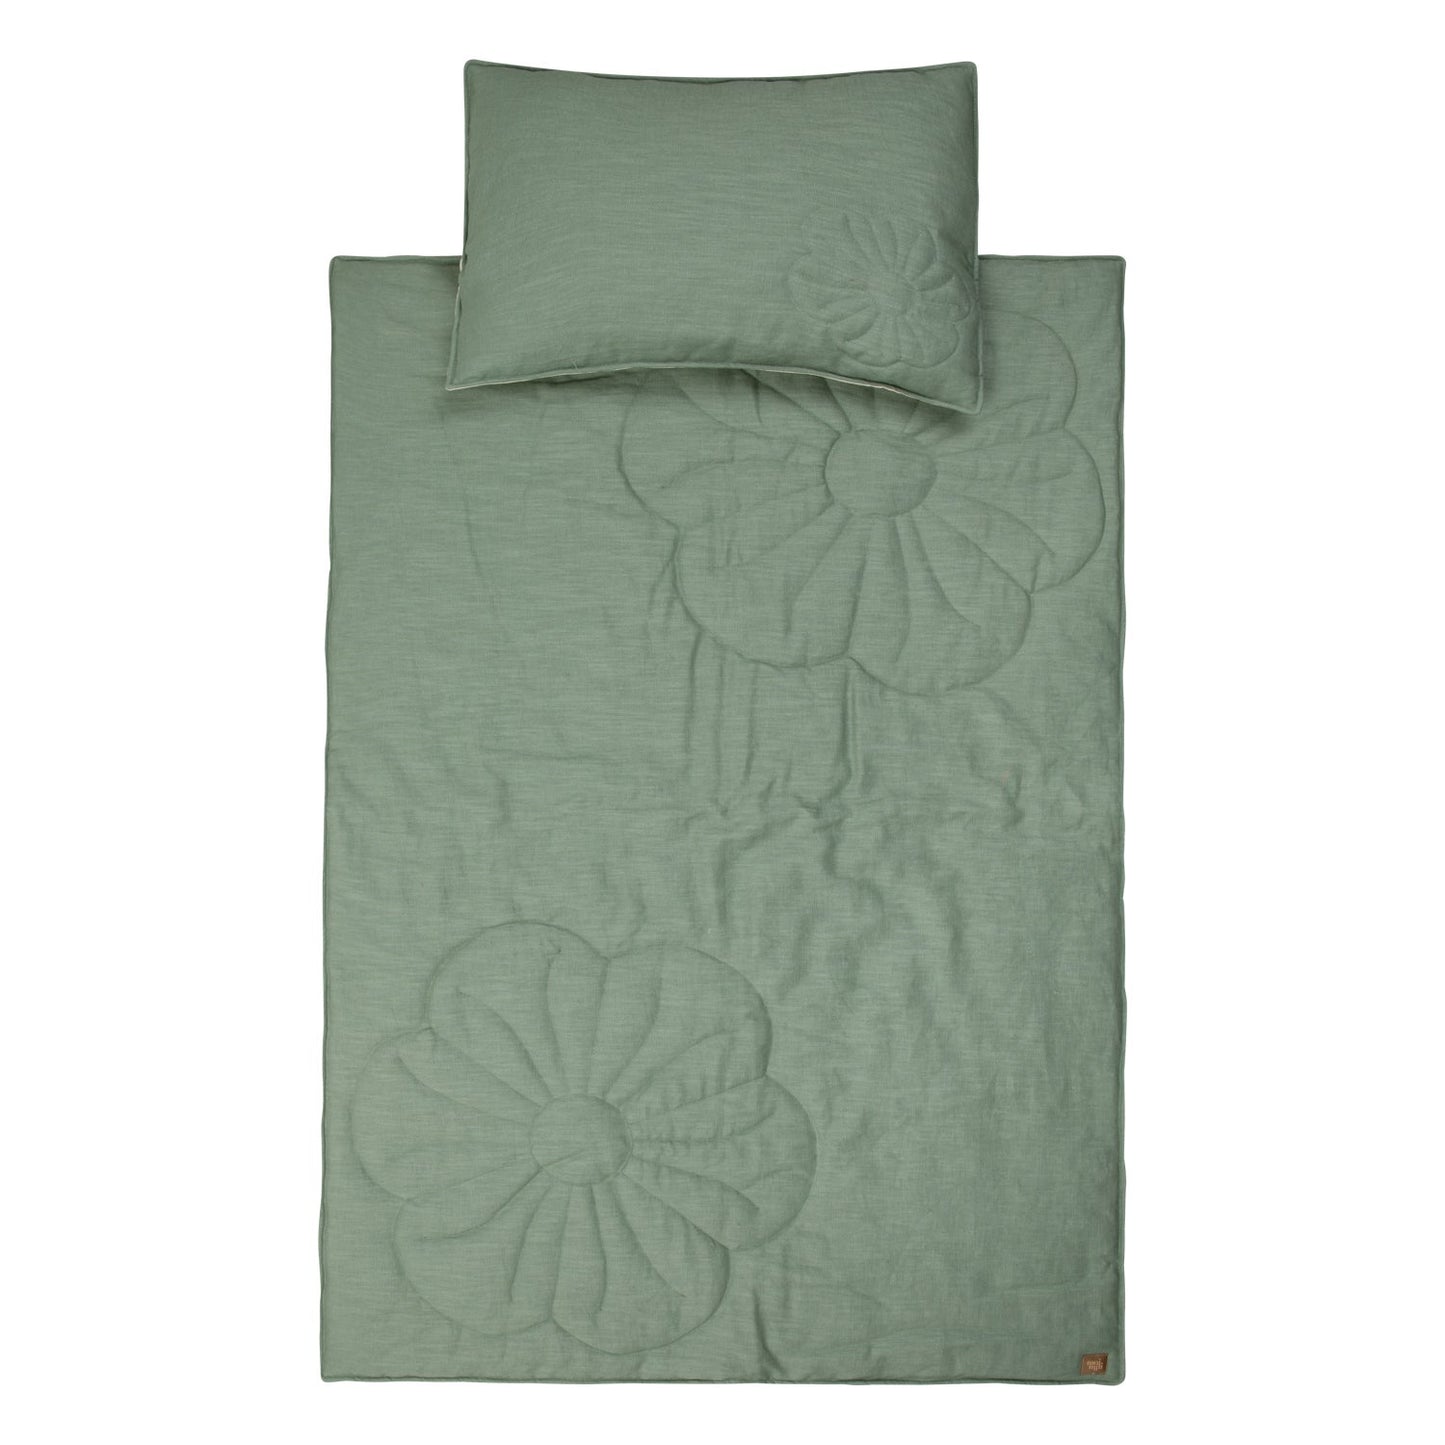 Linen "Sage" Flower Child Cover Set (Large)